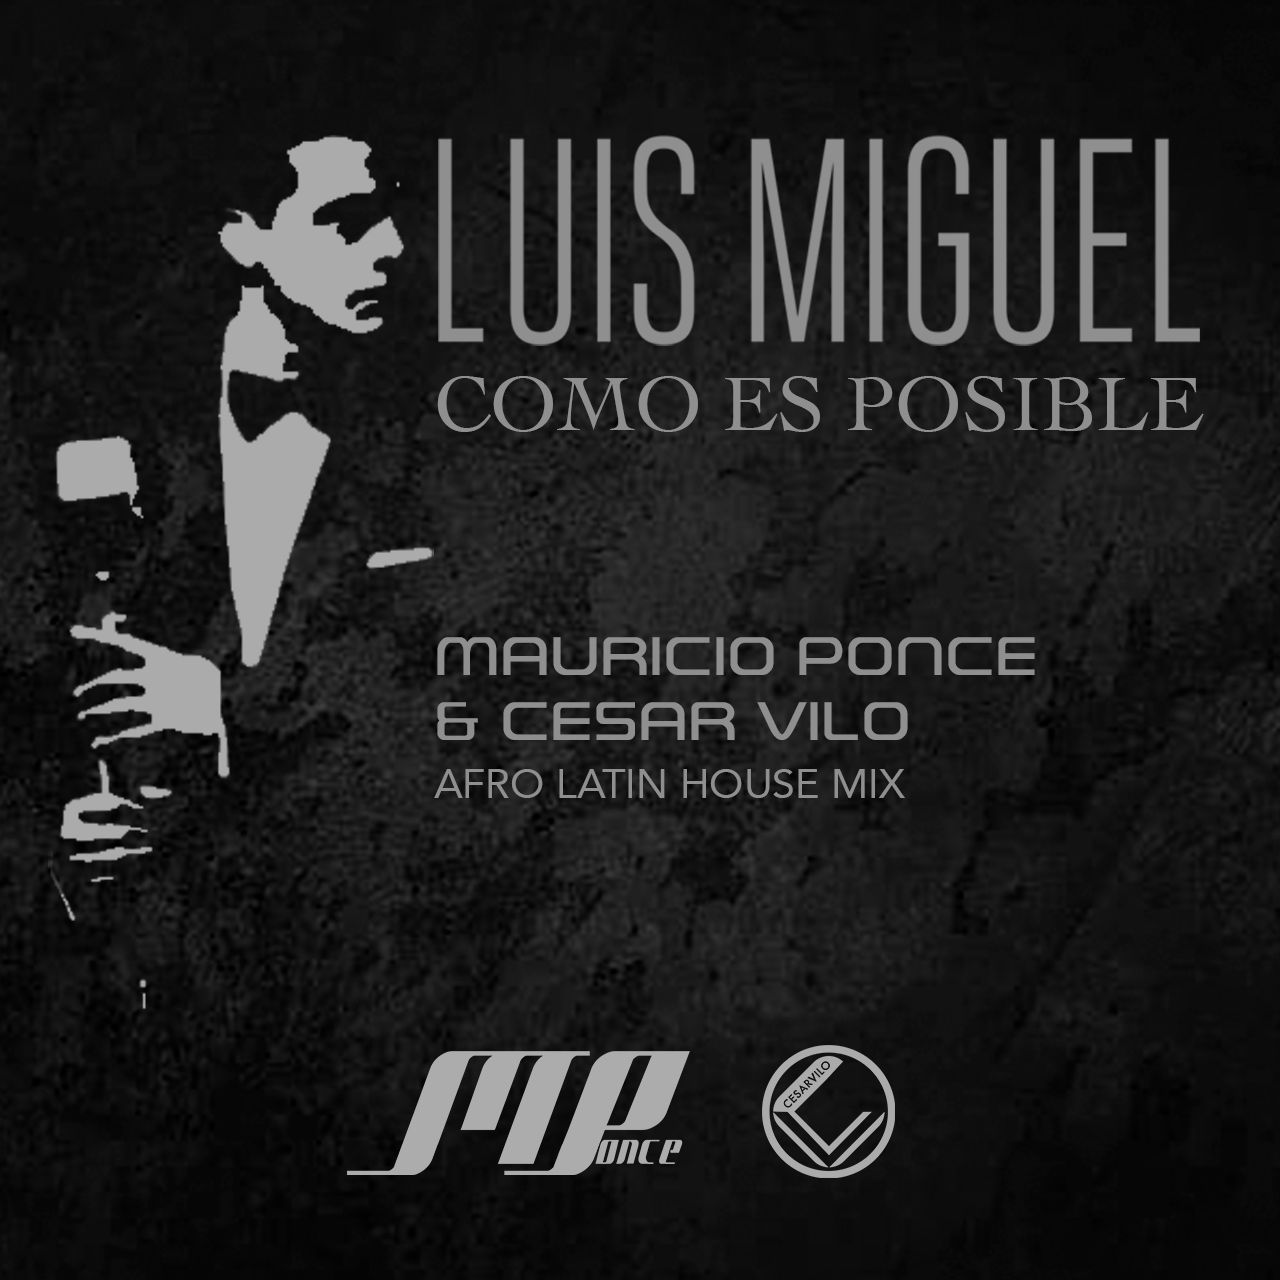 Luis Miguel - Como es Posible (Mauricio Ponce & Cesar Vilo Afro Latin House Mix)